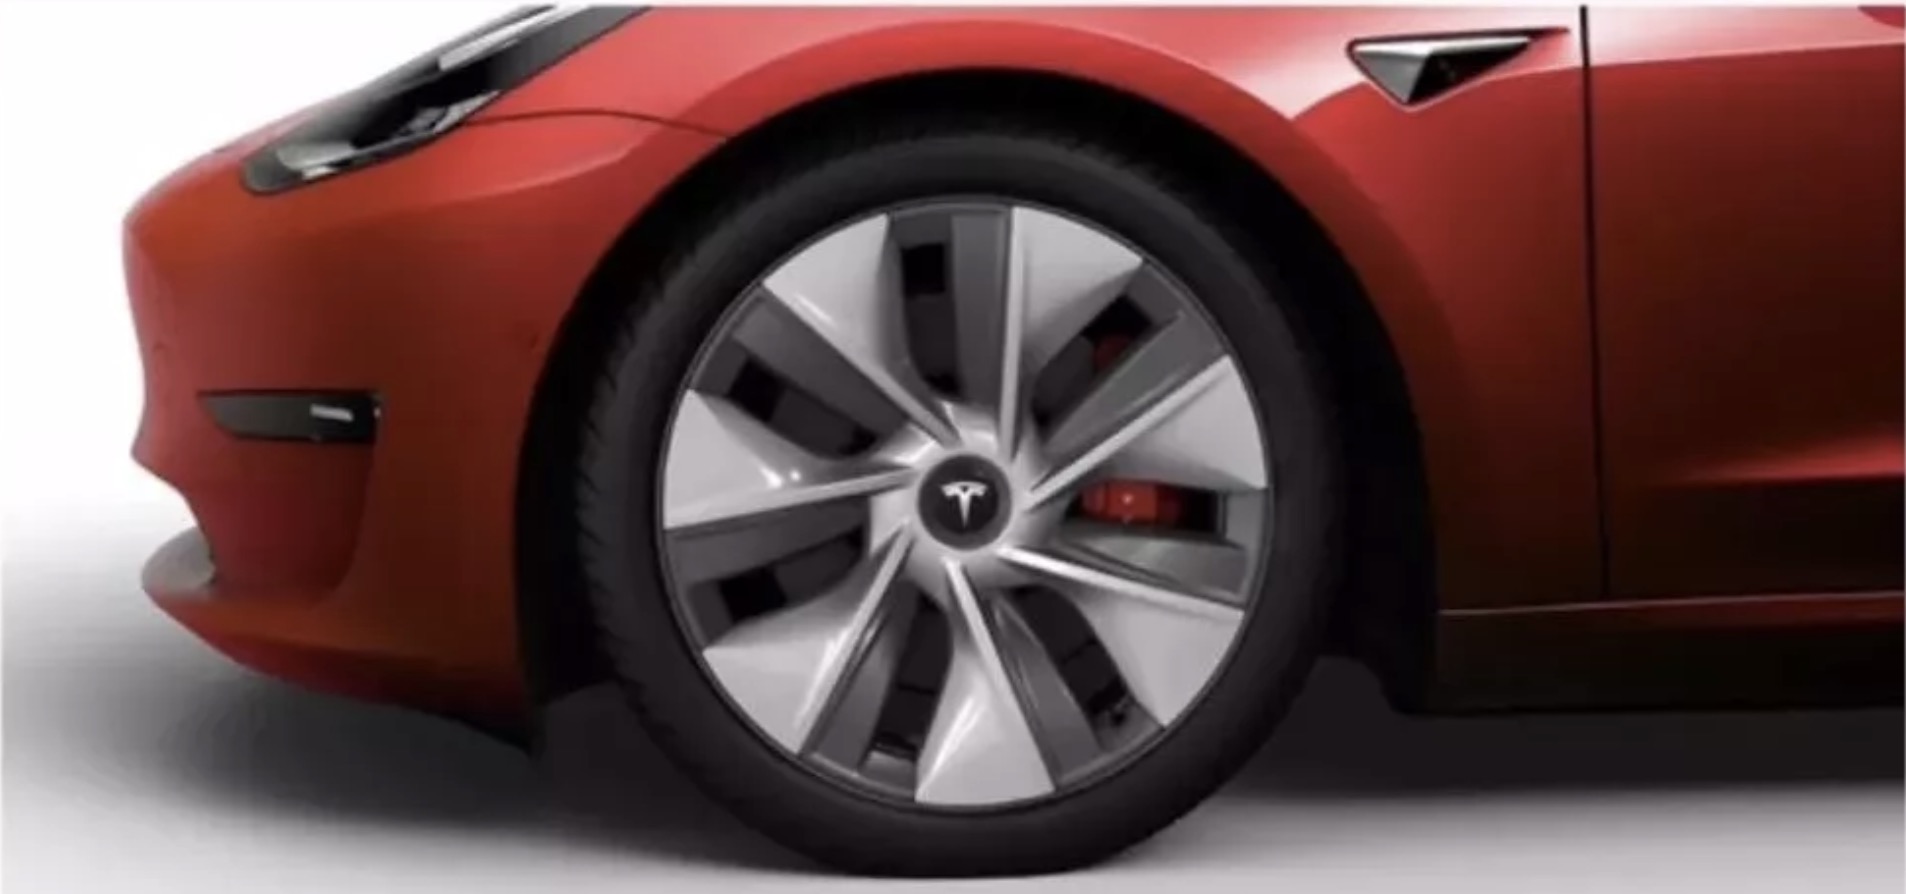 Tesla starts Model 3 orders in China, unveils new wheel design - Electrek